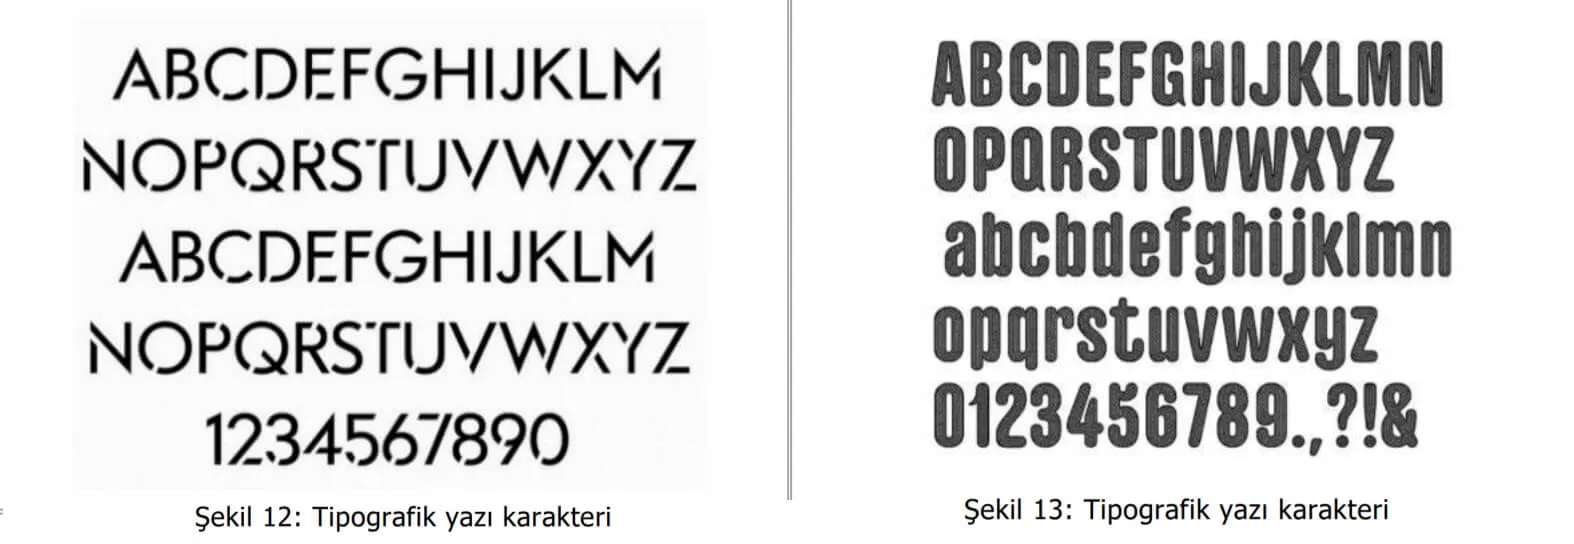 tipografik yazı karakter örnekleri-Paraf Patent